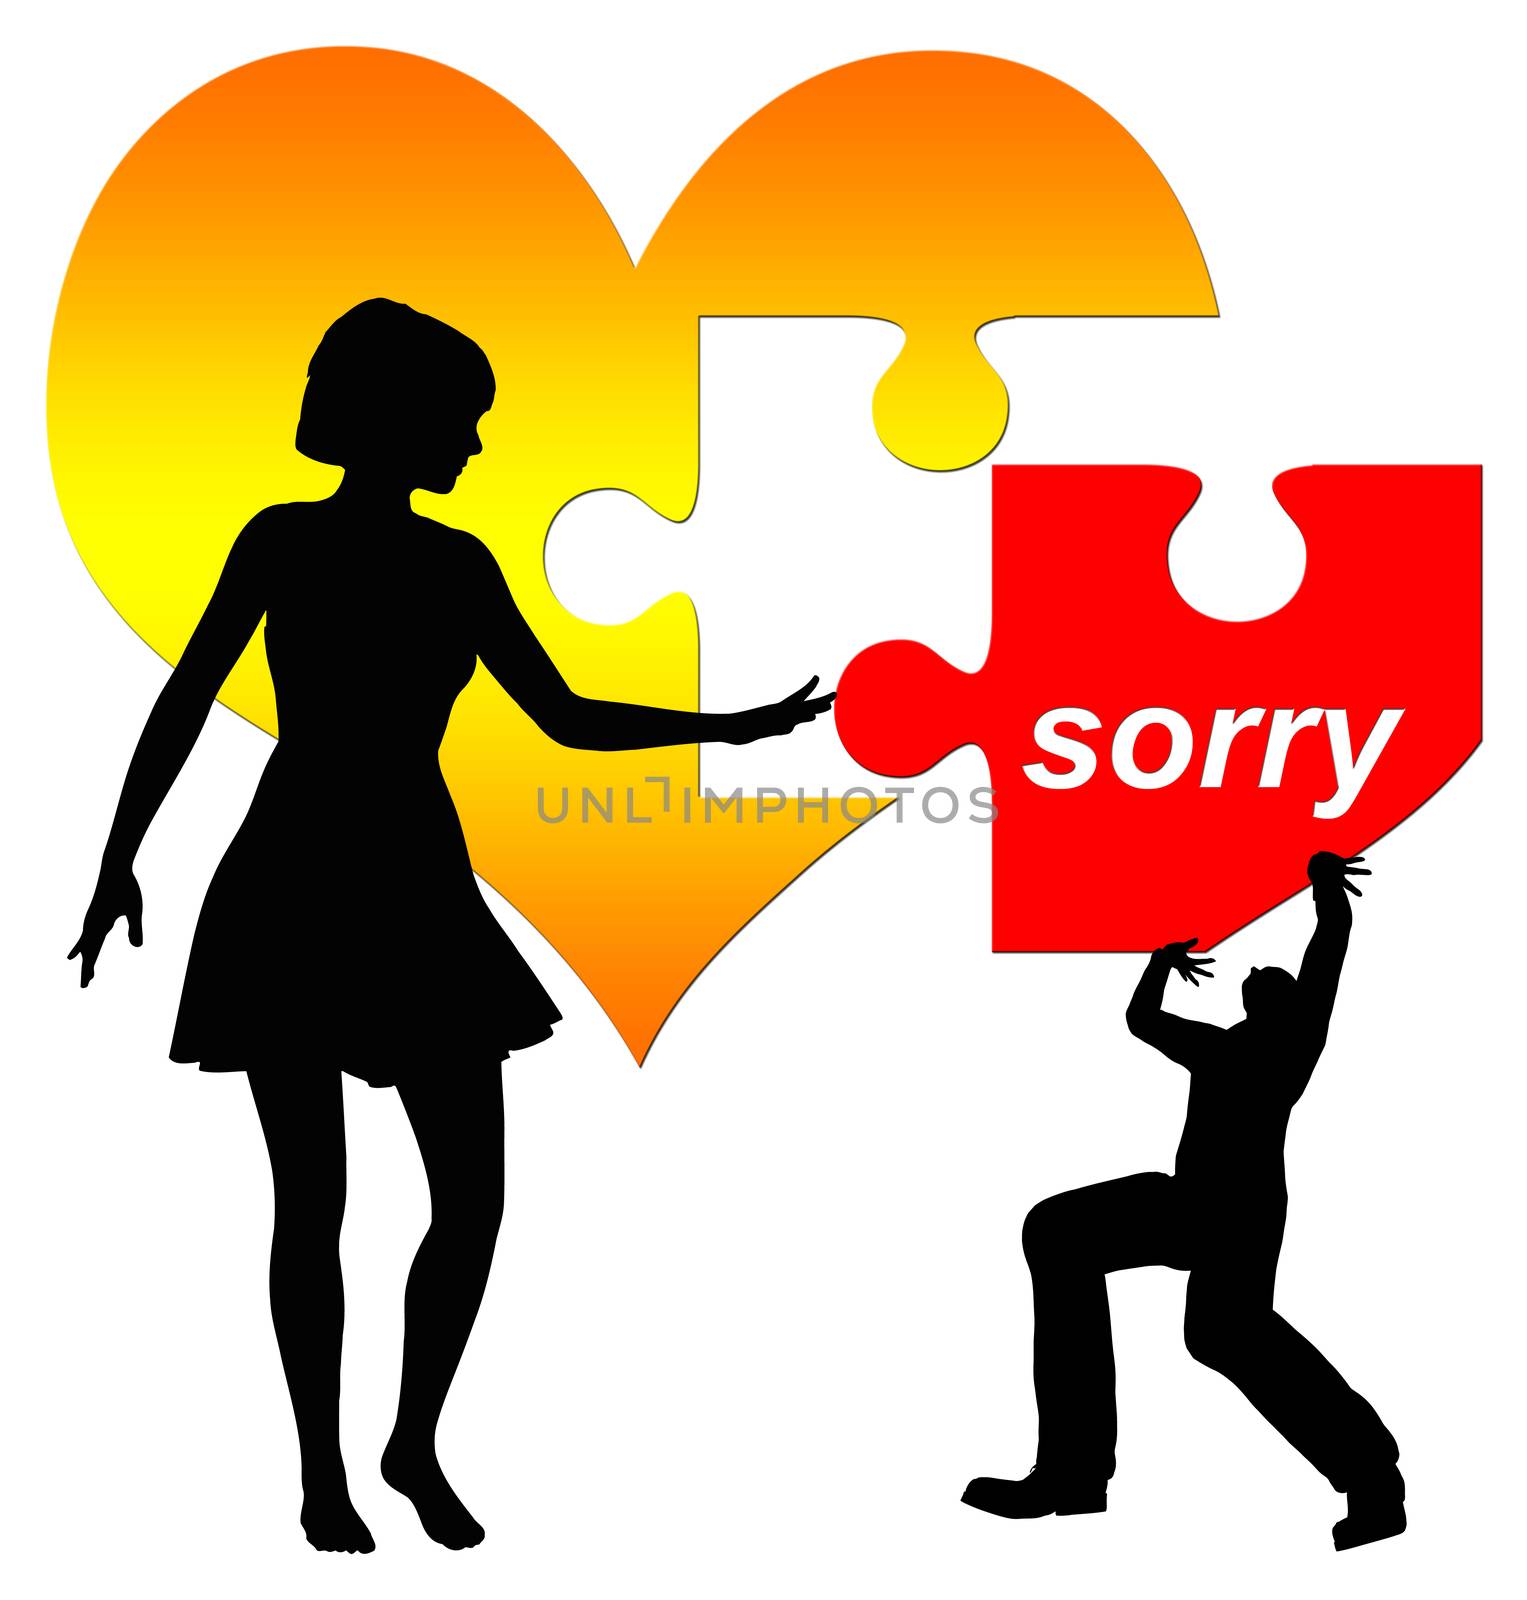 Man apologizes, woman hesitating to accept it